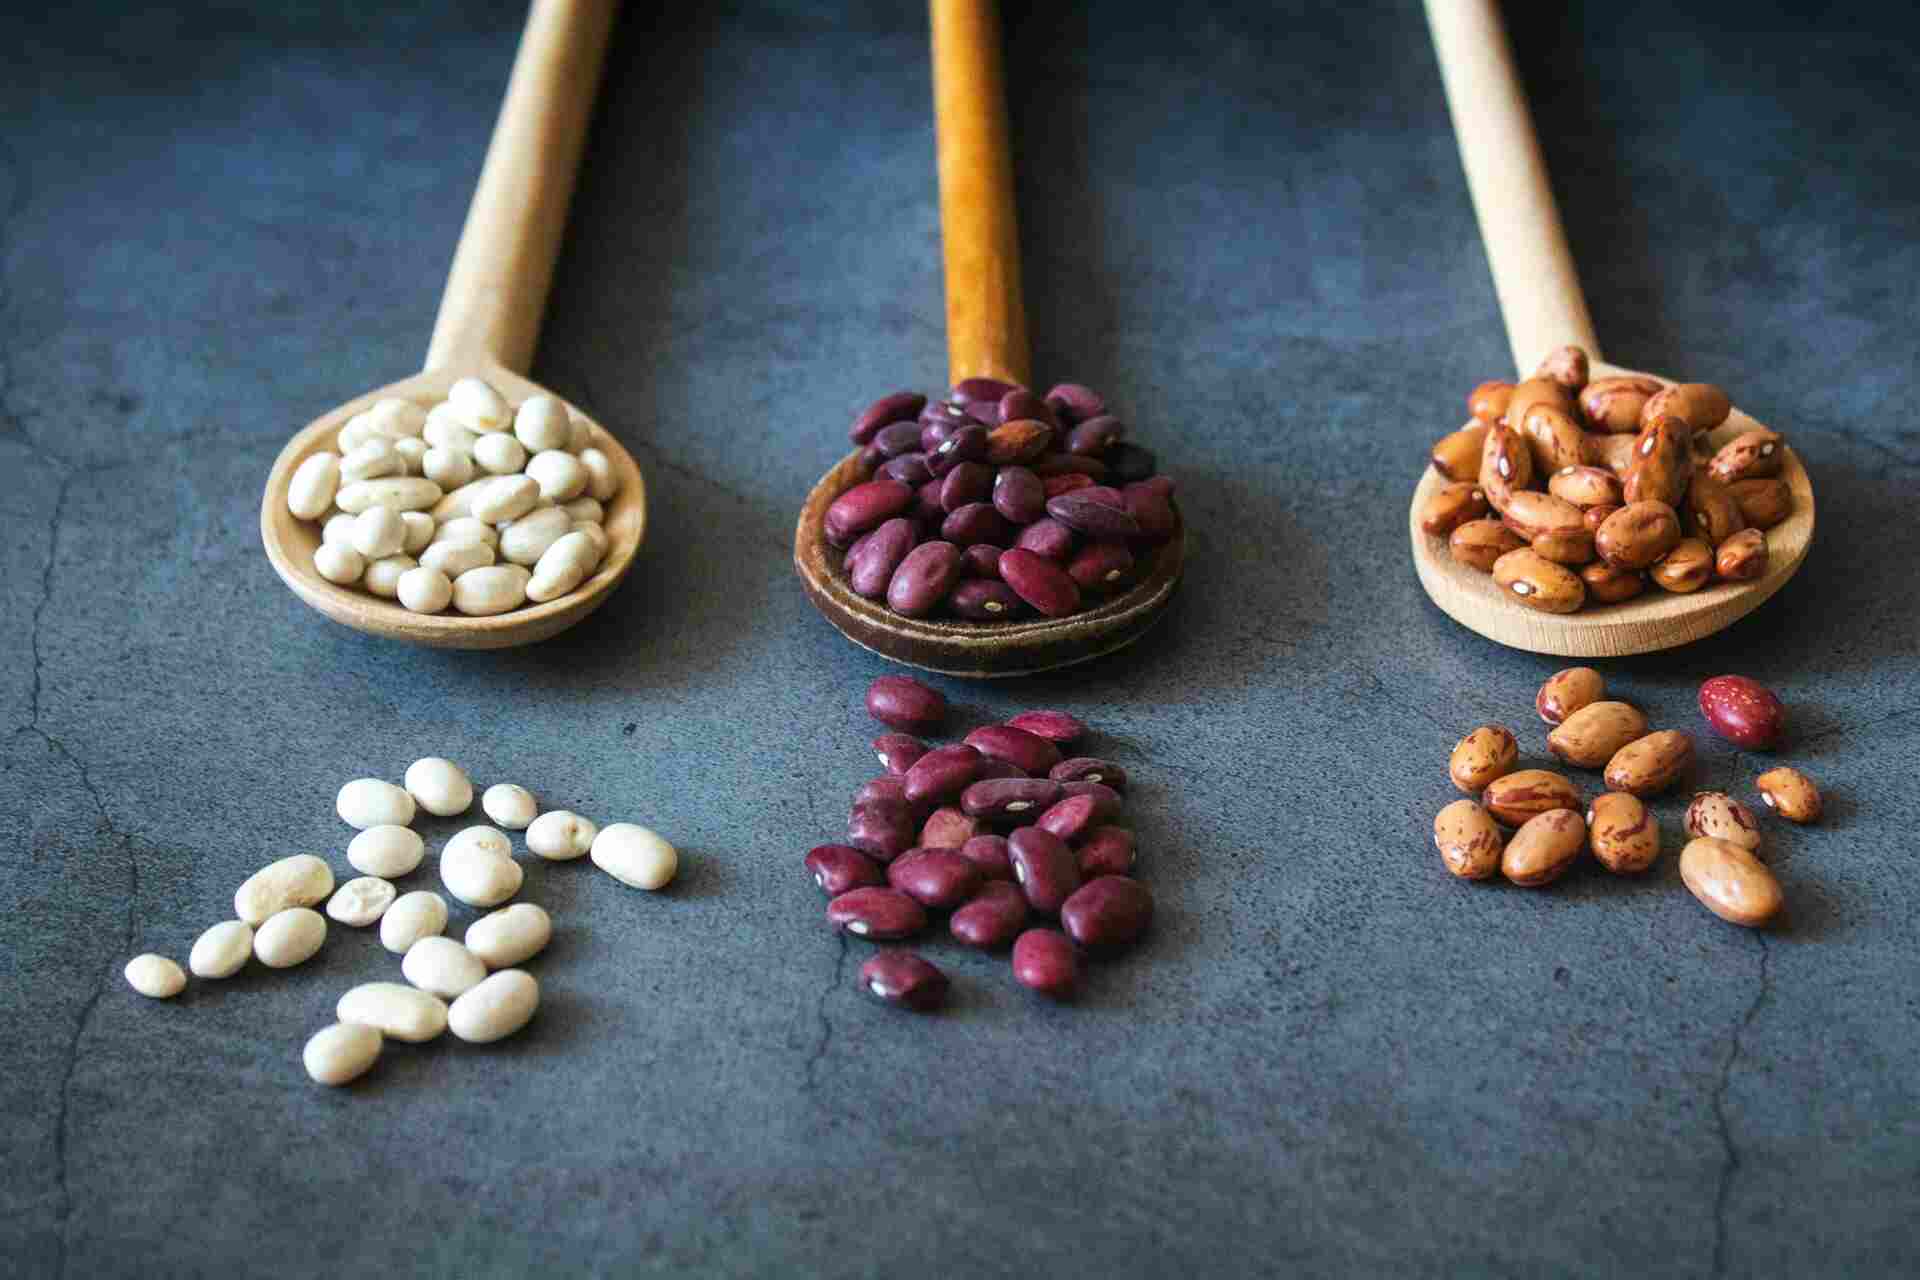 DM: орехи, бобовые и лосось снижают уровень холестерина в организме человека